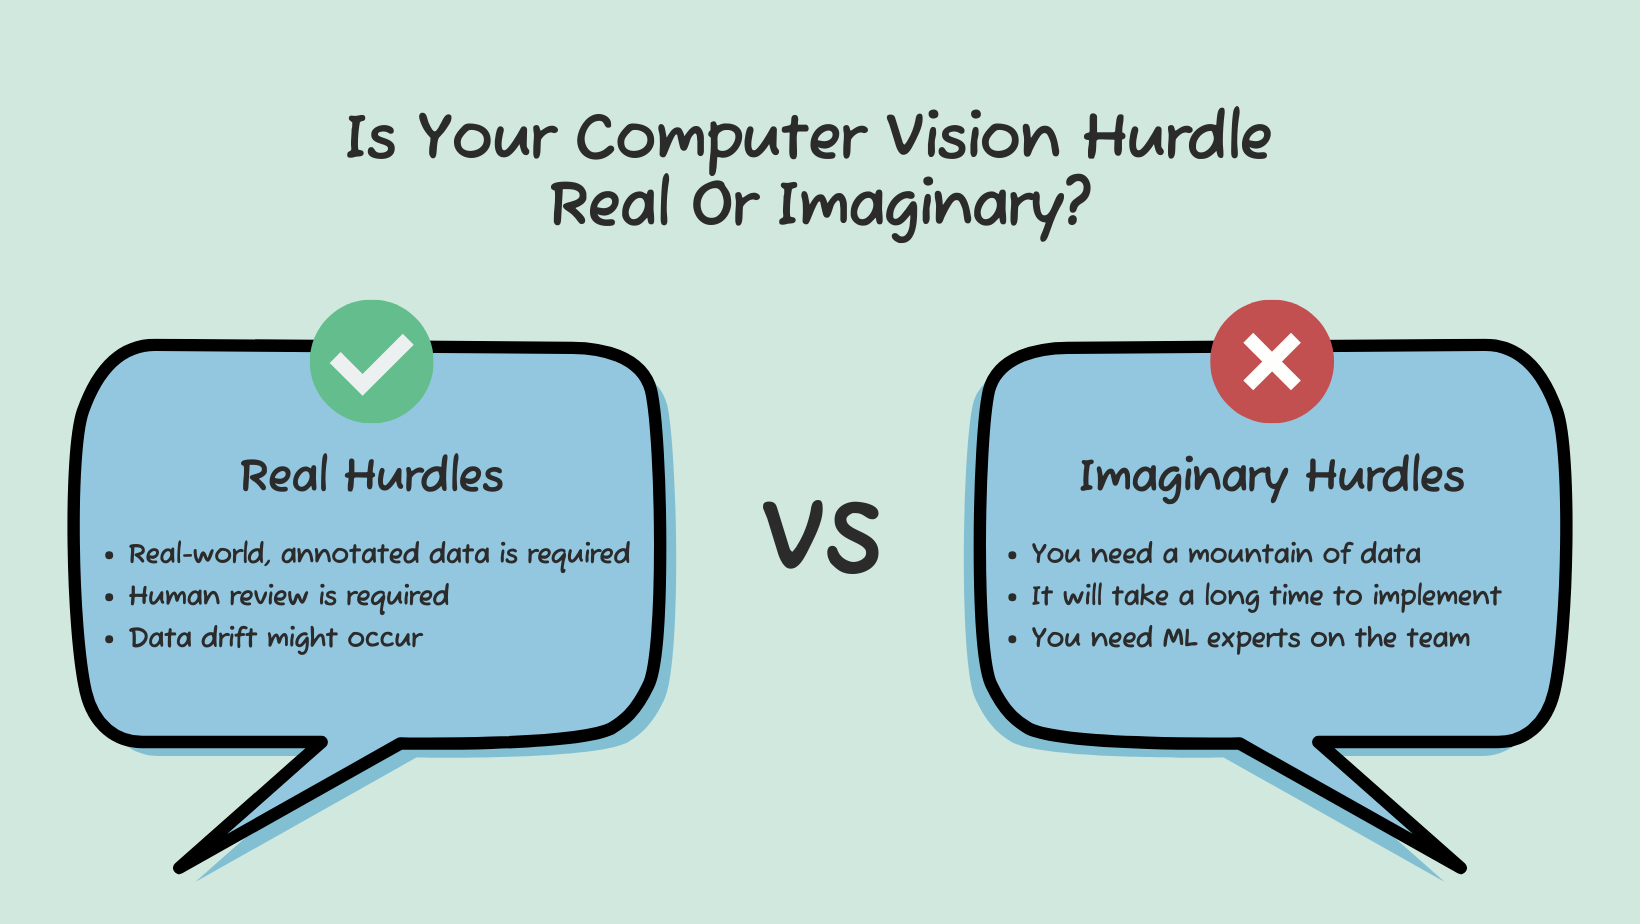 Computer vision hurdles